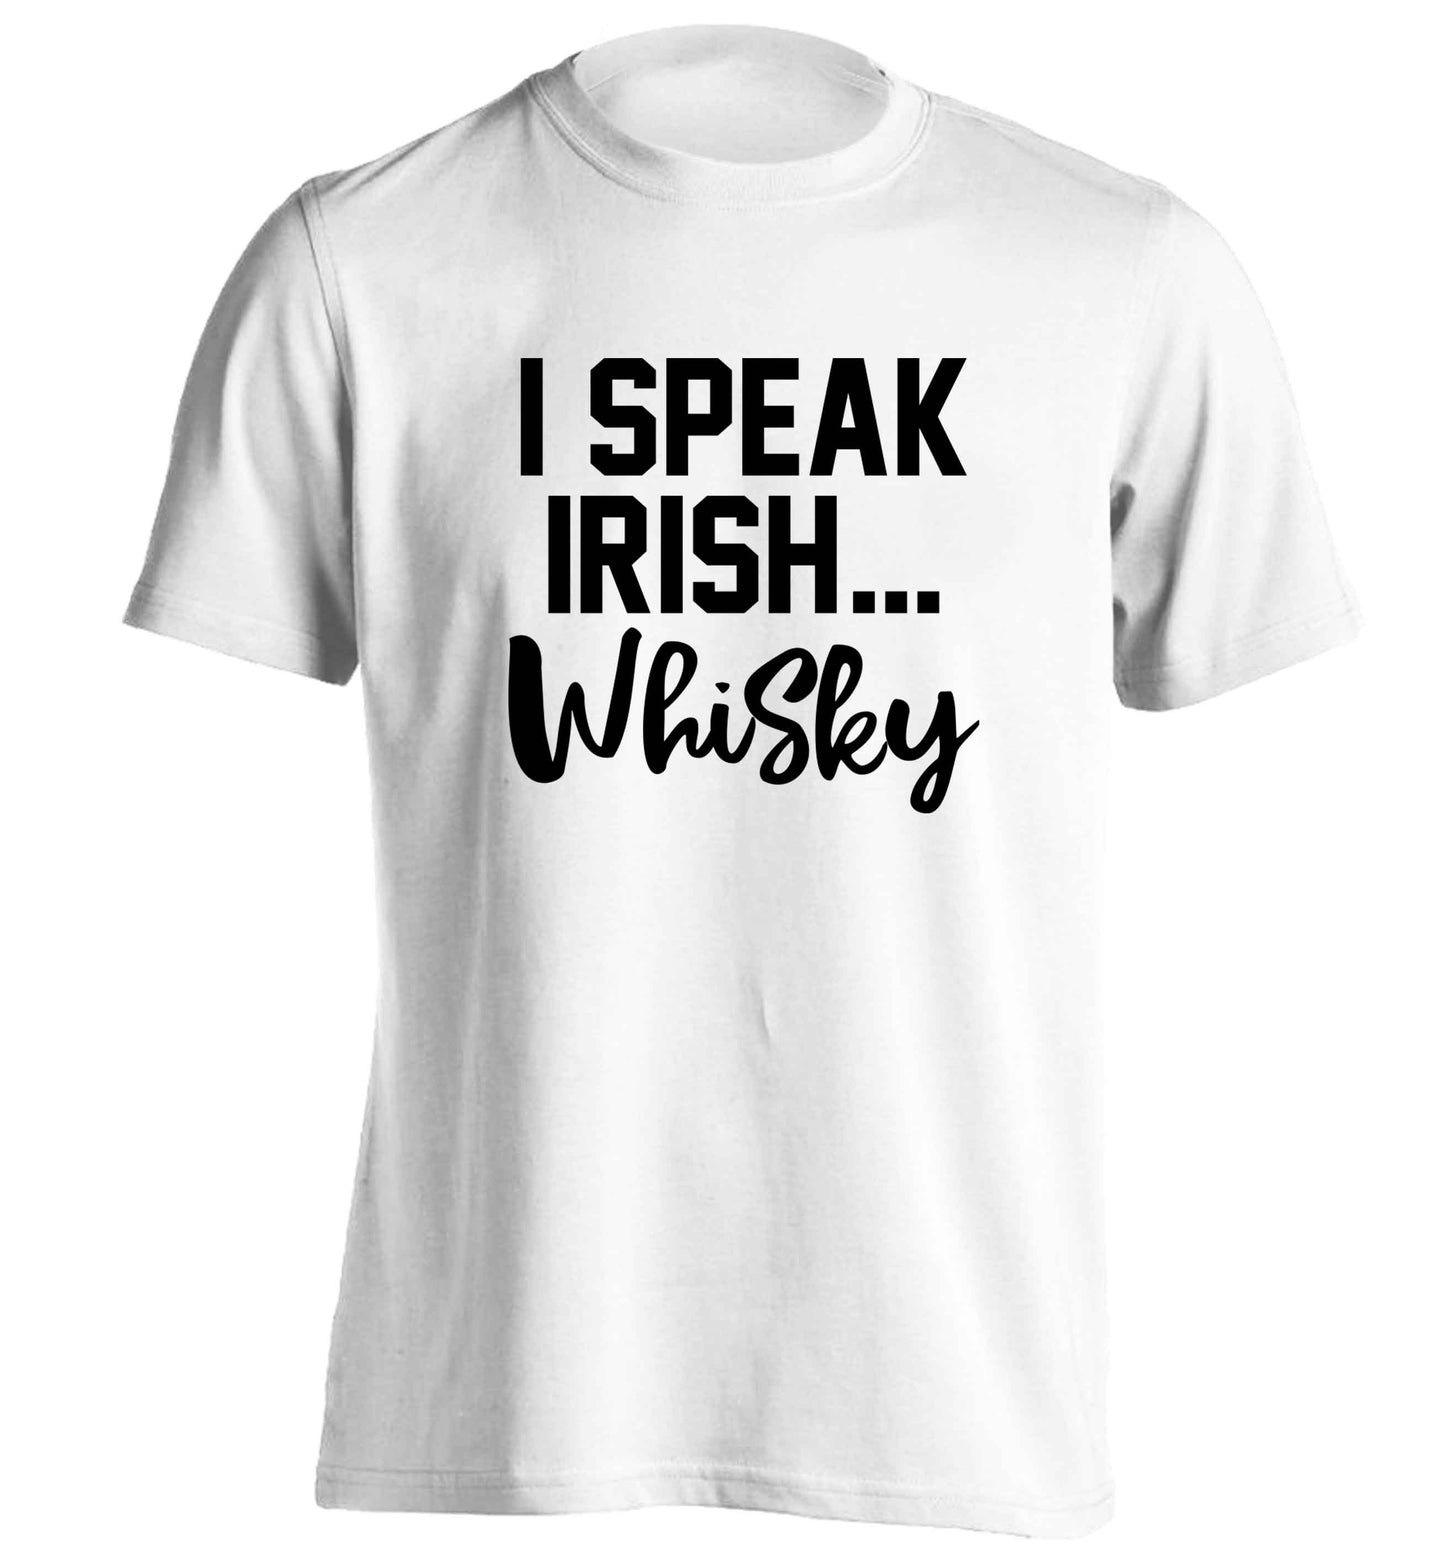 I speak Irish whisky adults unisex white Tshirt 2XL